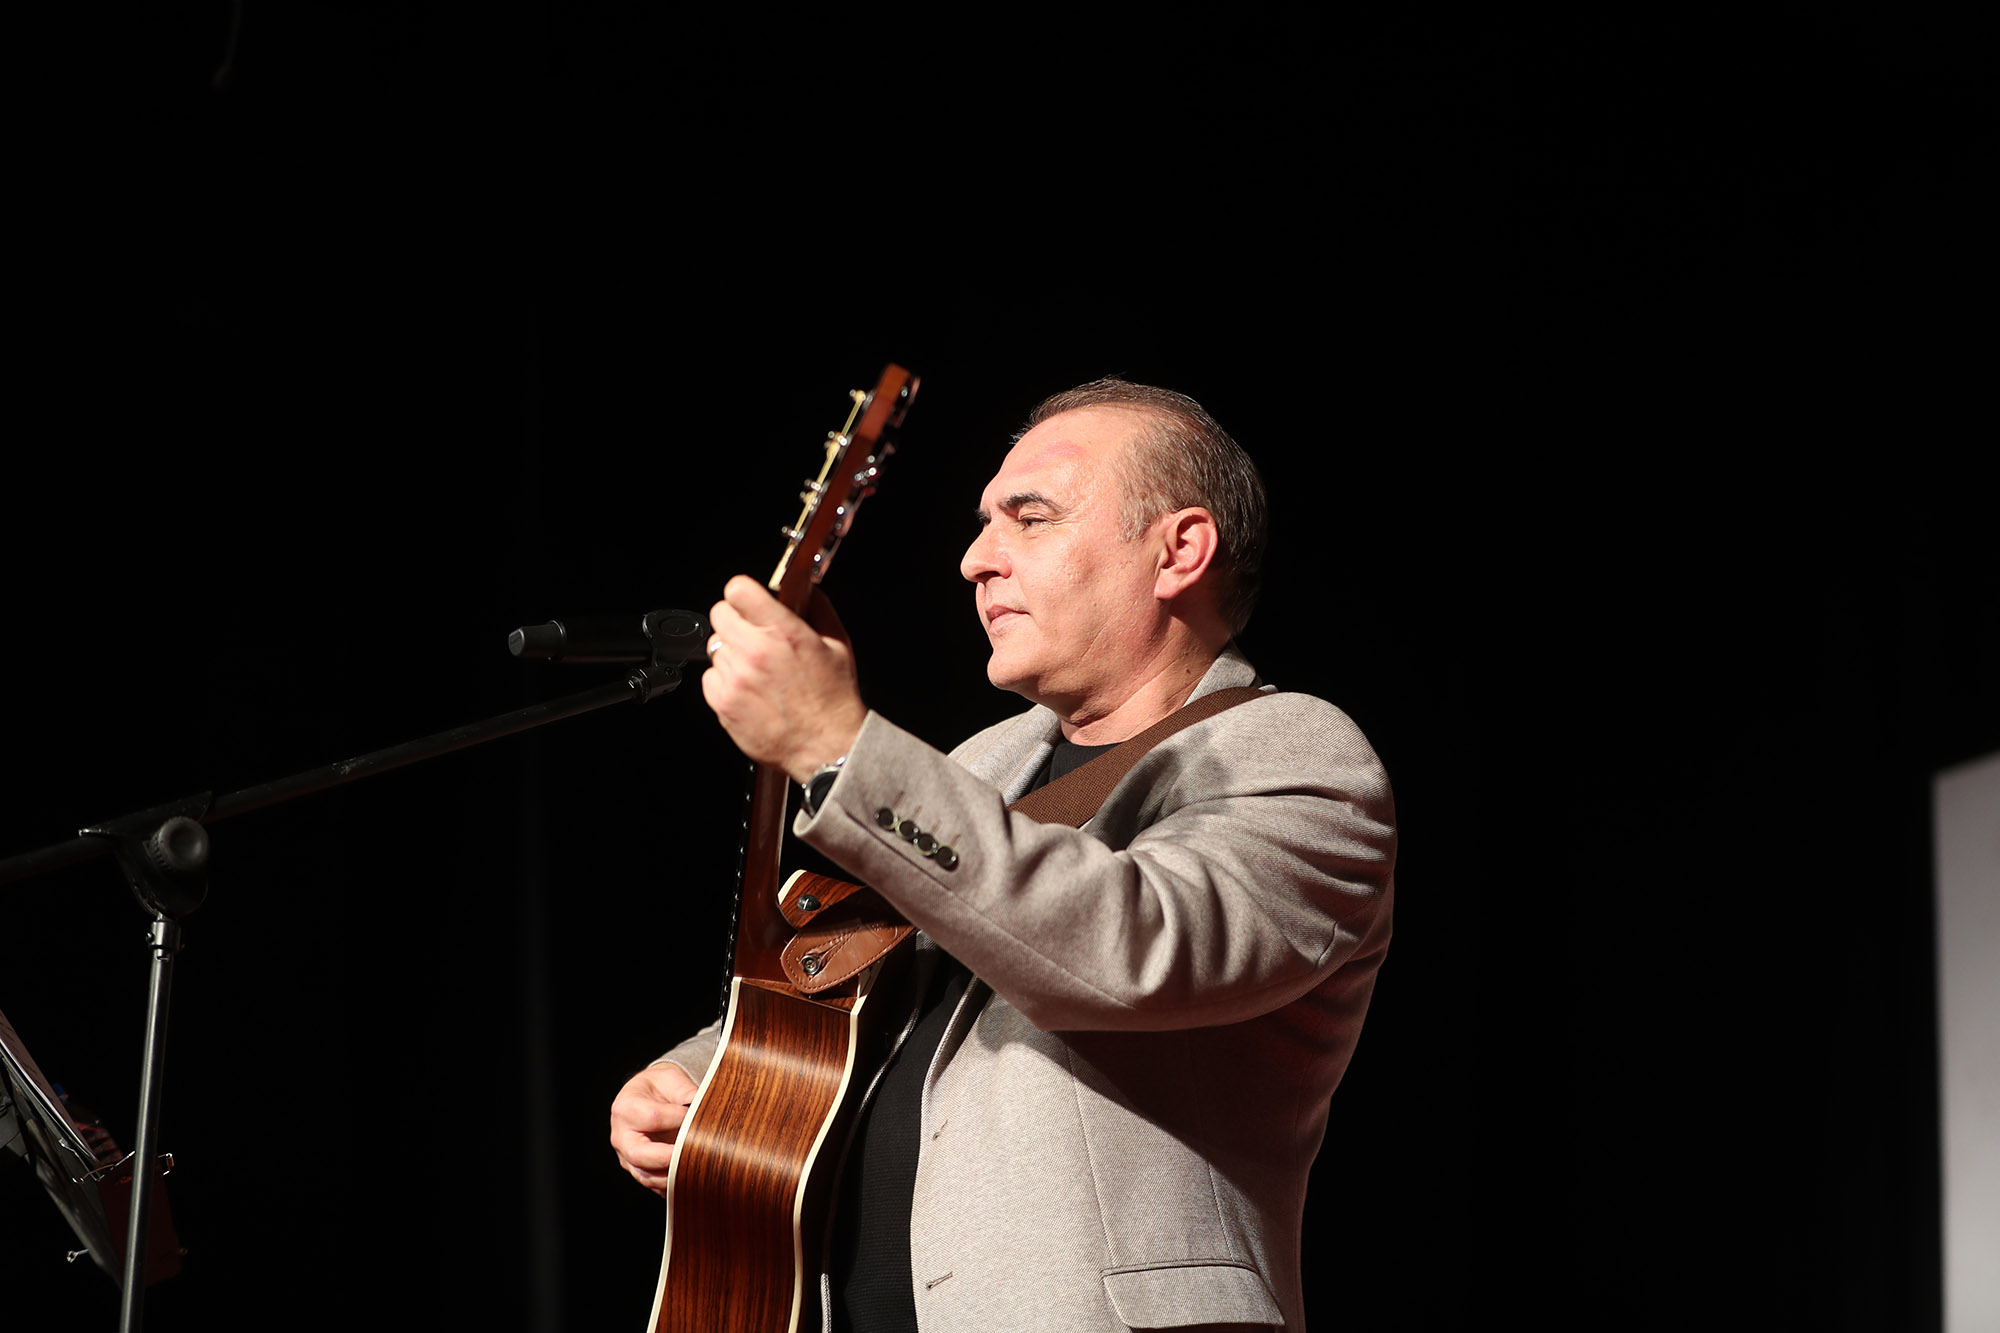 Büyükşehir’in Aykut Kuşkaya konserinde müzik şöleni